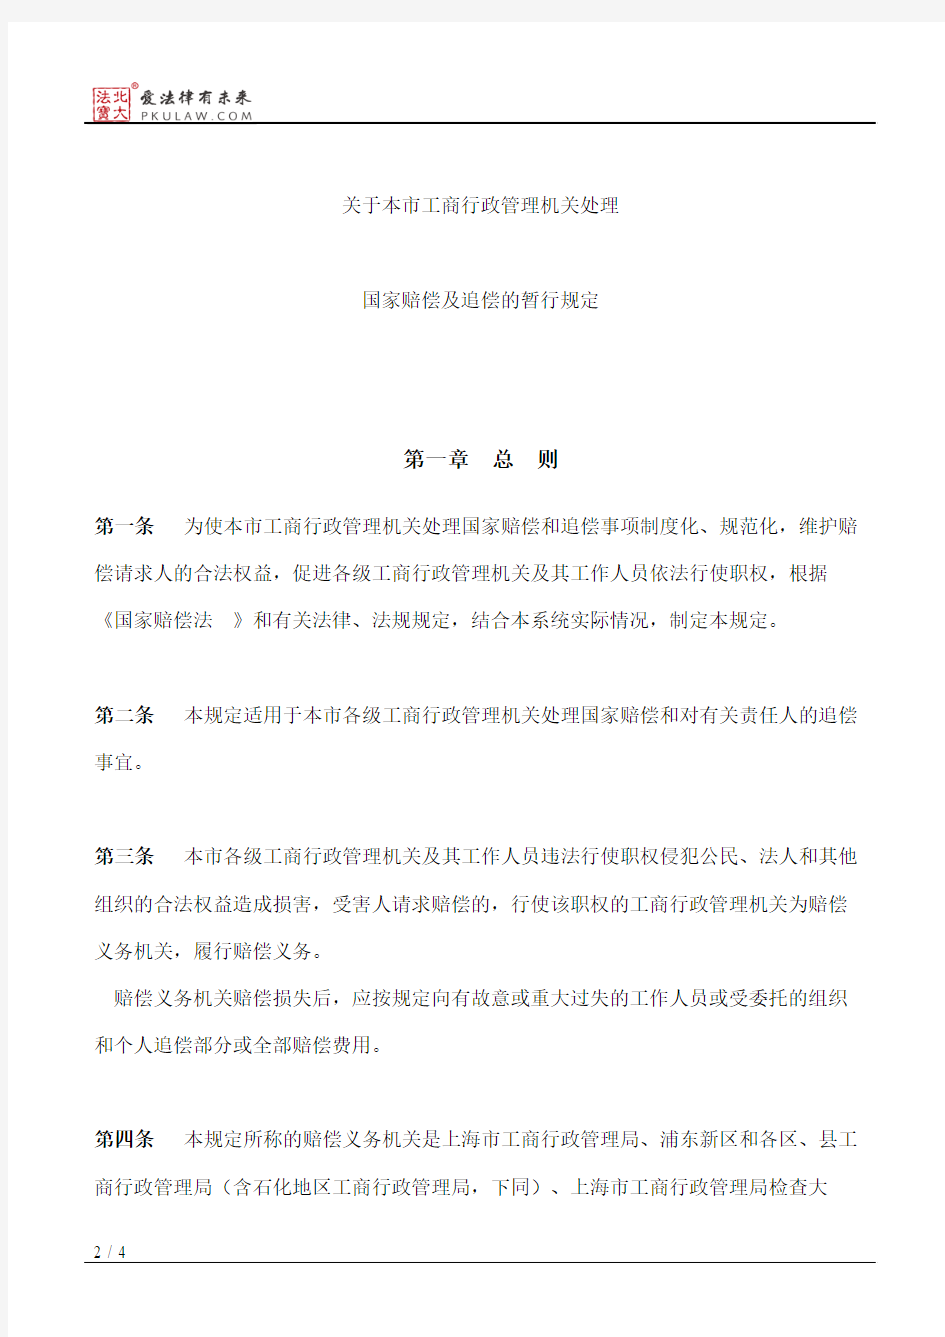 上海市工商行政管理局关于印发《关于本市工商行政管理机关处理国